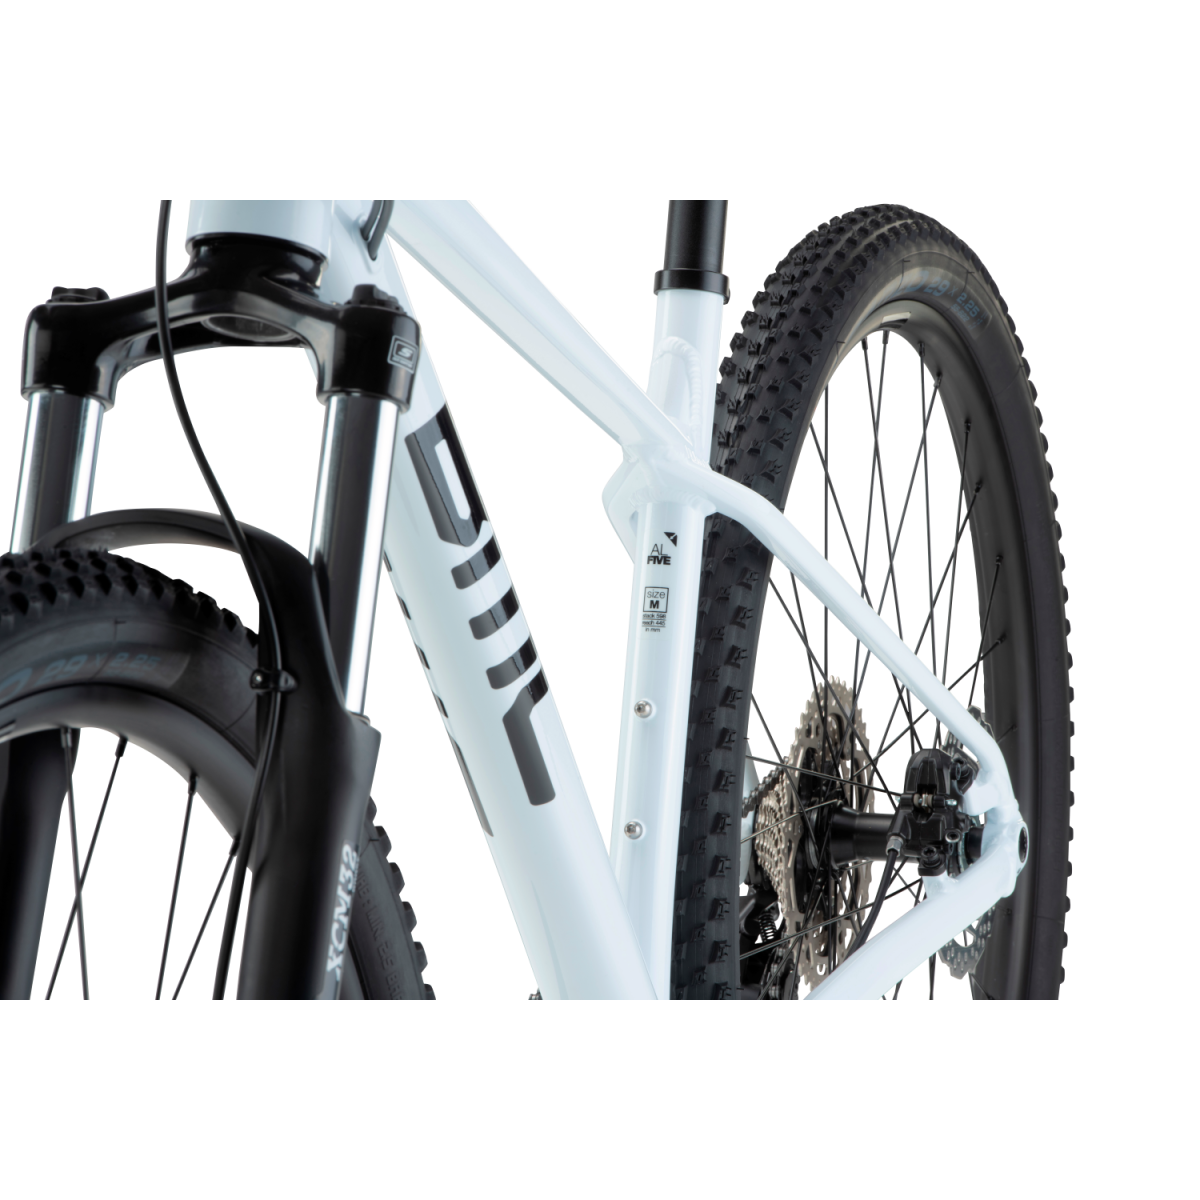 BMC Twostroke AL Five kalnų dviratis / White